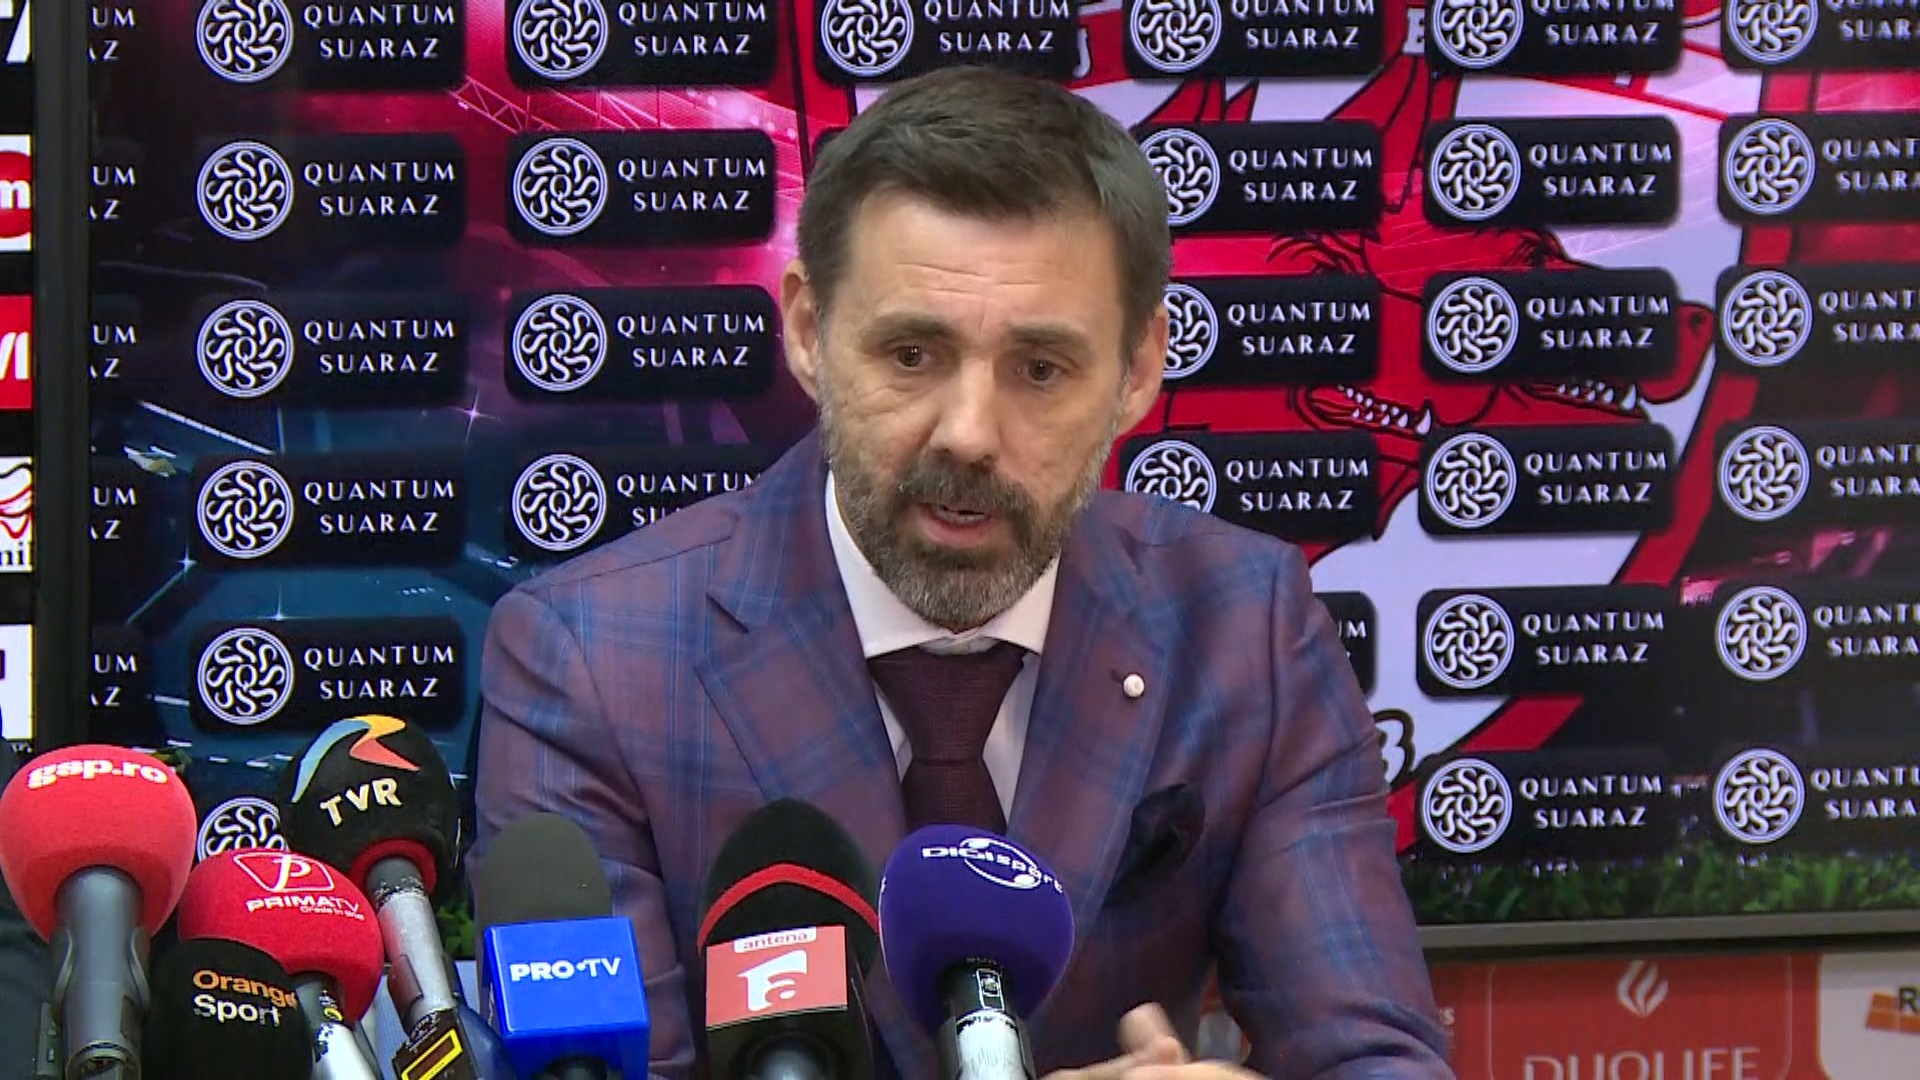 Zeljko Kopic nu a câștigat încă cu Dinamo, dar este încrezător: ”Trebuie să creștem”